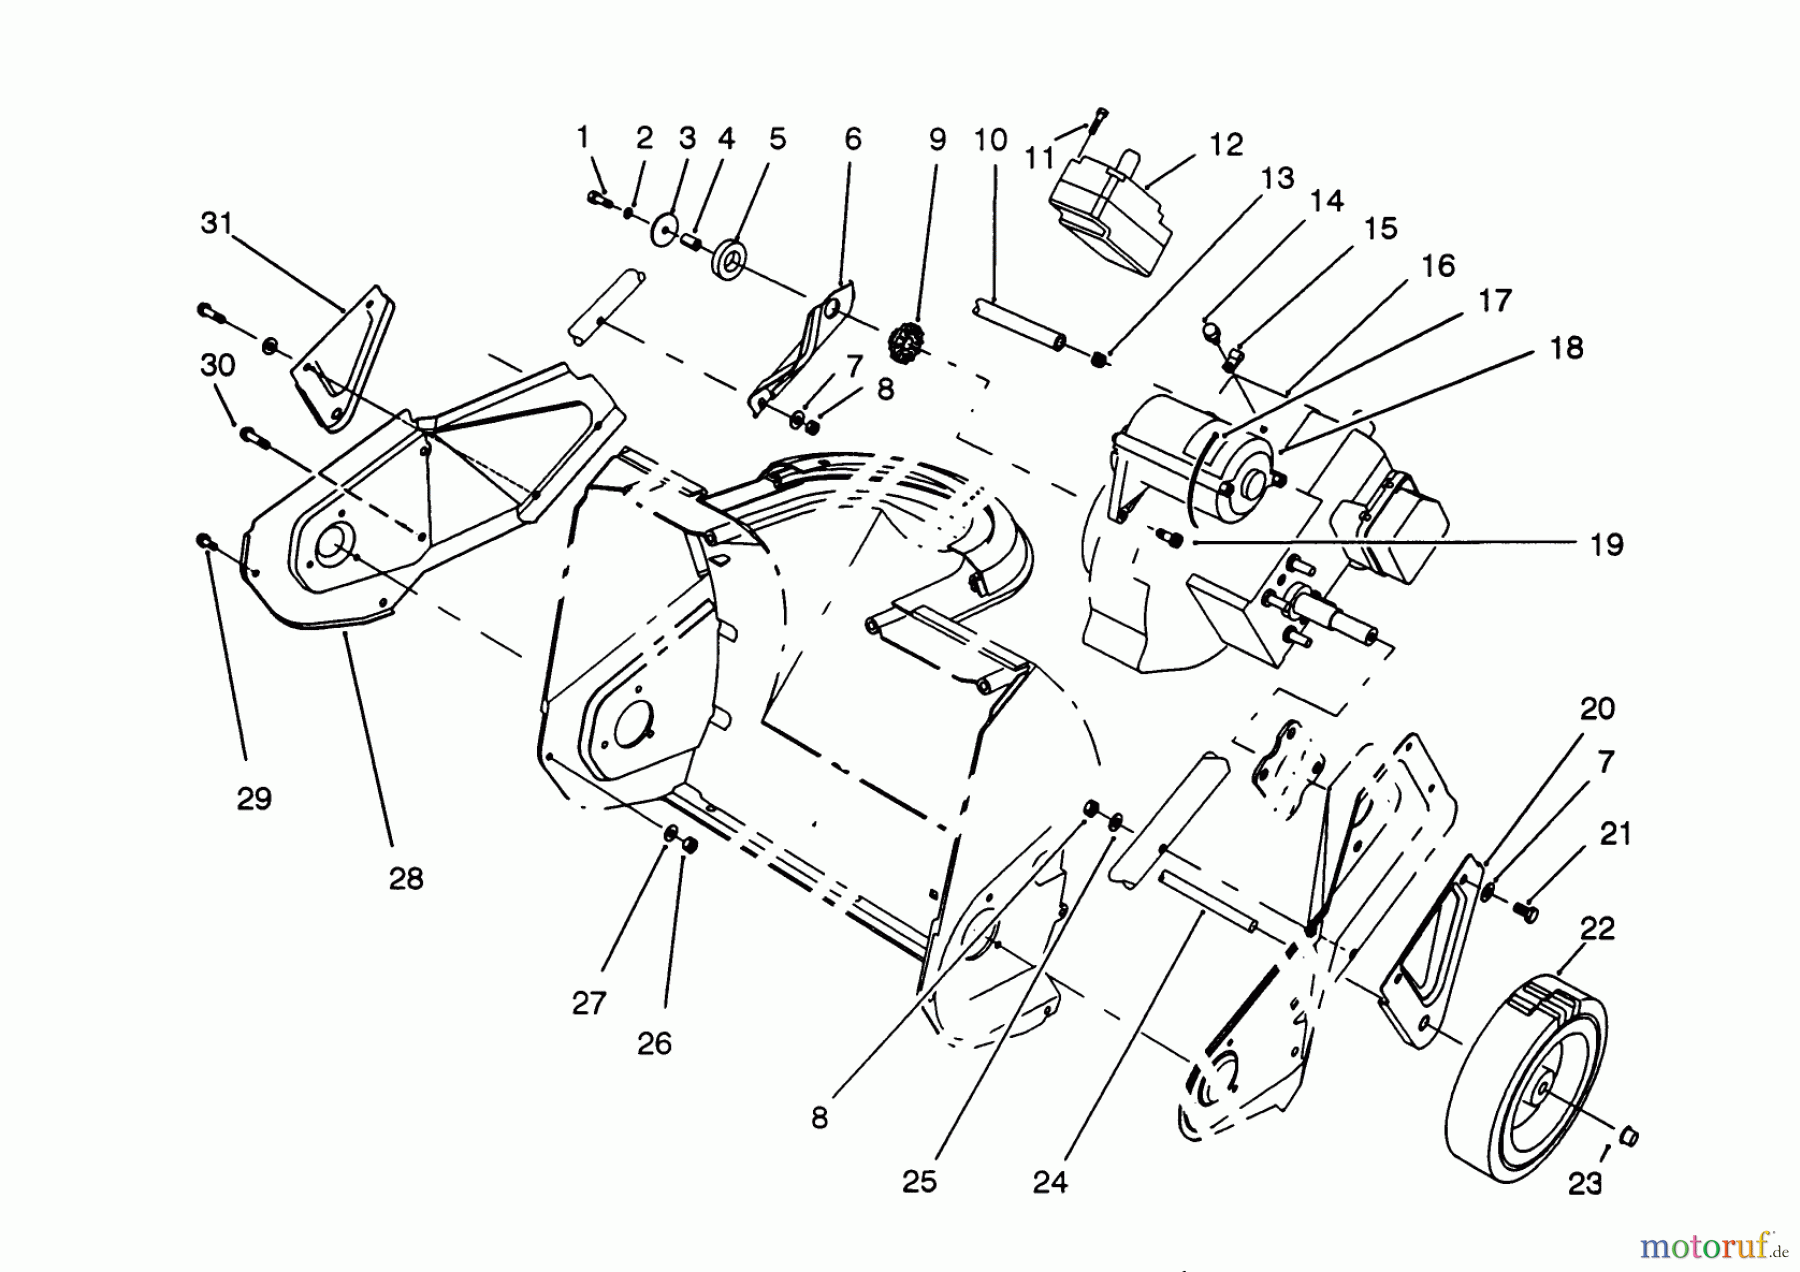  Toro Neu Snow Blowers/Snow Throwers Seite 1 38176 - Toro CCR Powerlite Snowthrower, 1993 (3900001-3999999) ENGINE & WHEEL ASSEMBLY